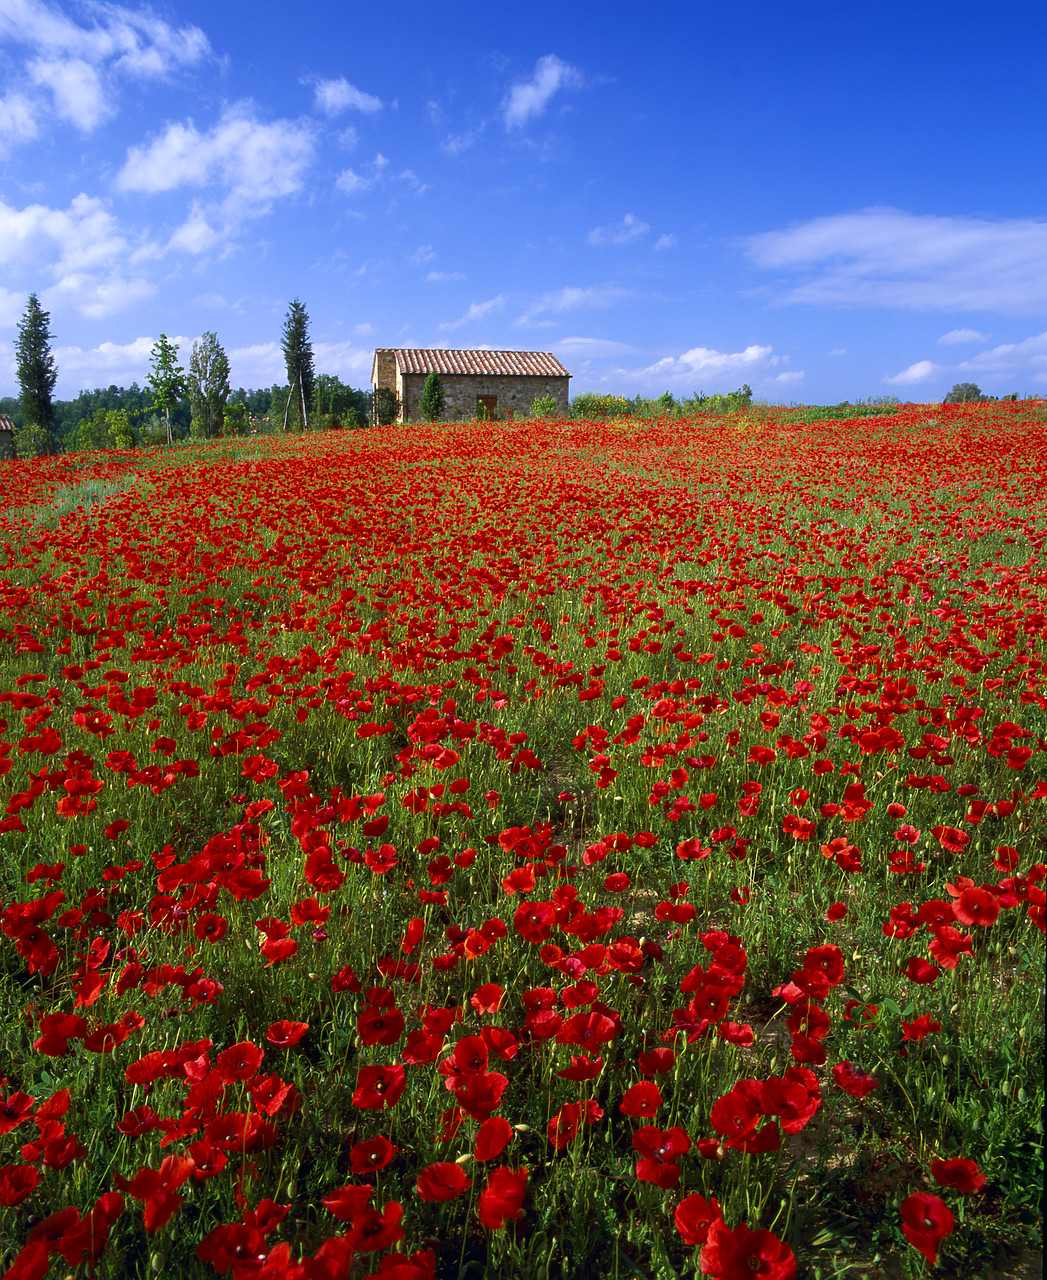 #020116-4 - Villa in Field of Poppies, Tuscany, Italy